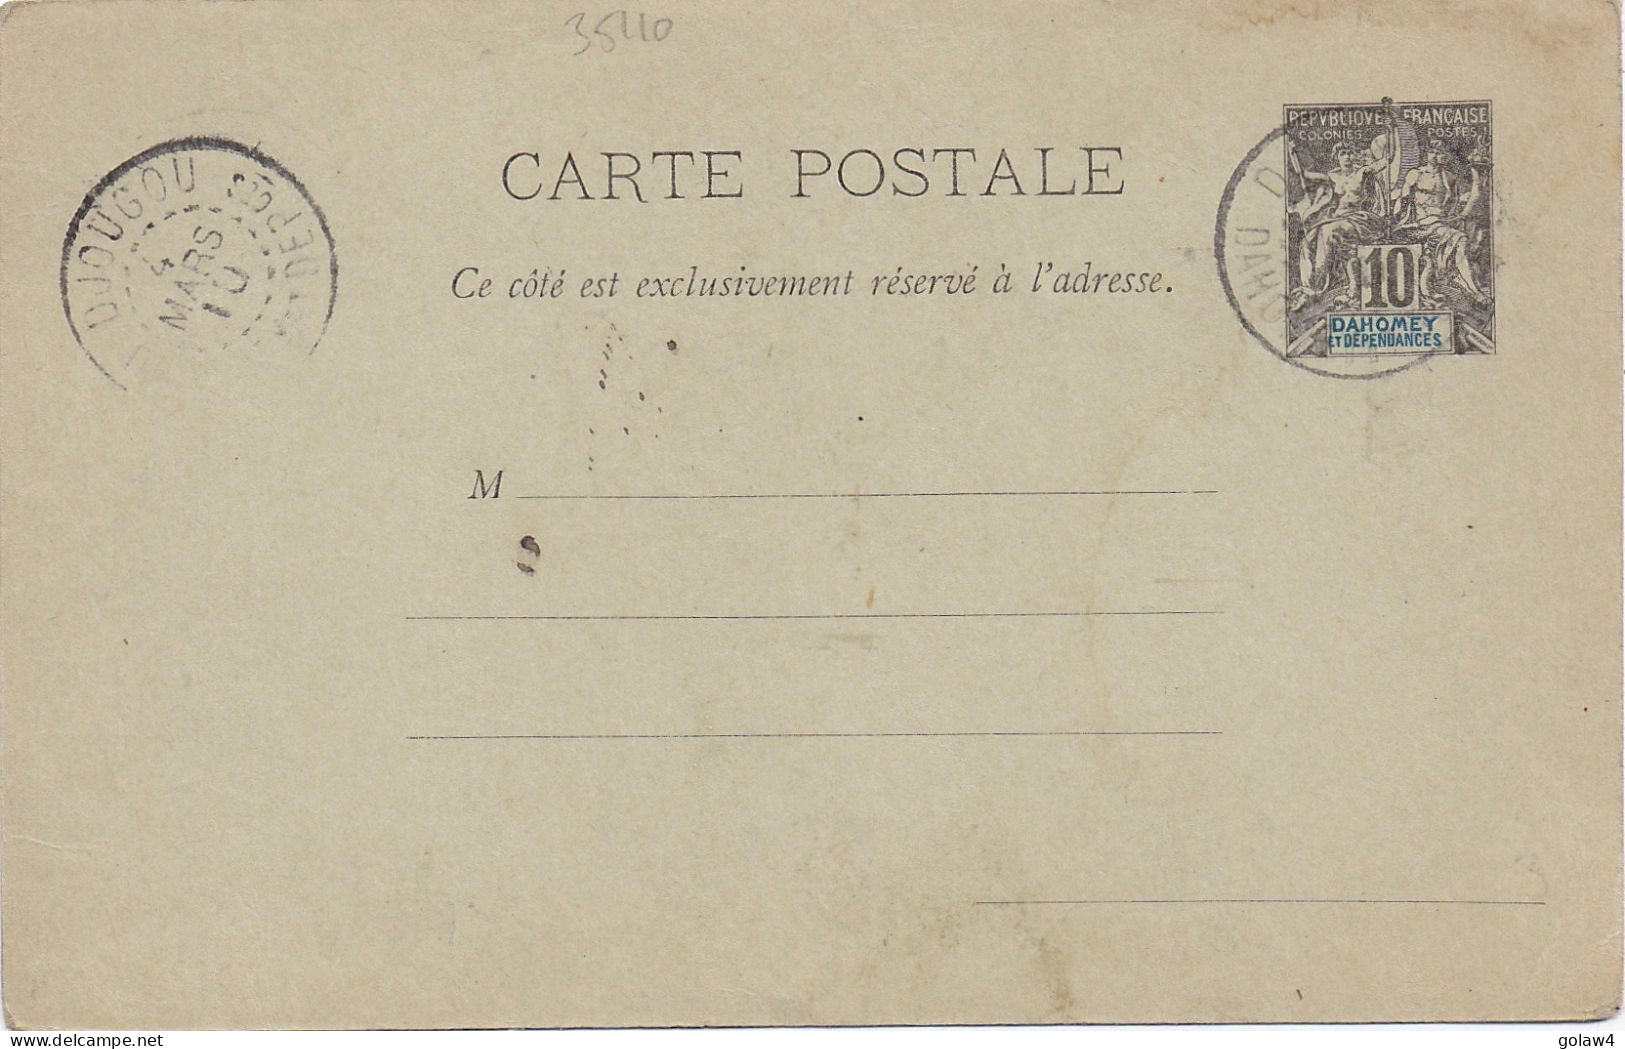 35110# ENTIER POSTAL CARTE POSTALE Obl DJOUGOU DAHOMEY ET DEPENDANCES 1910 STATIONERY GANZSACHE - Lettres & Documents